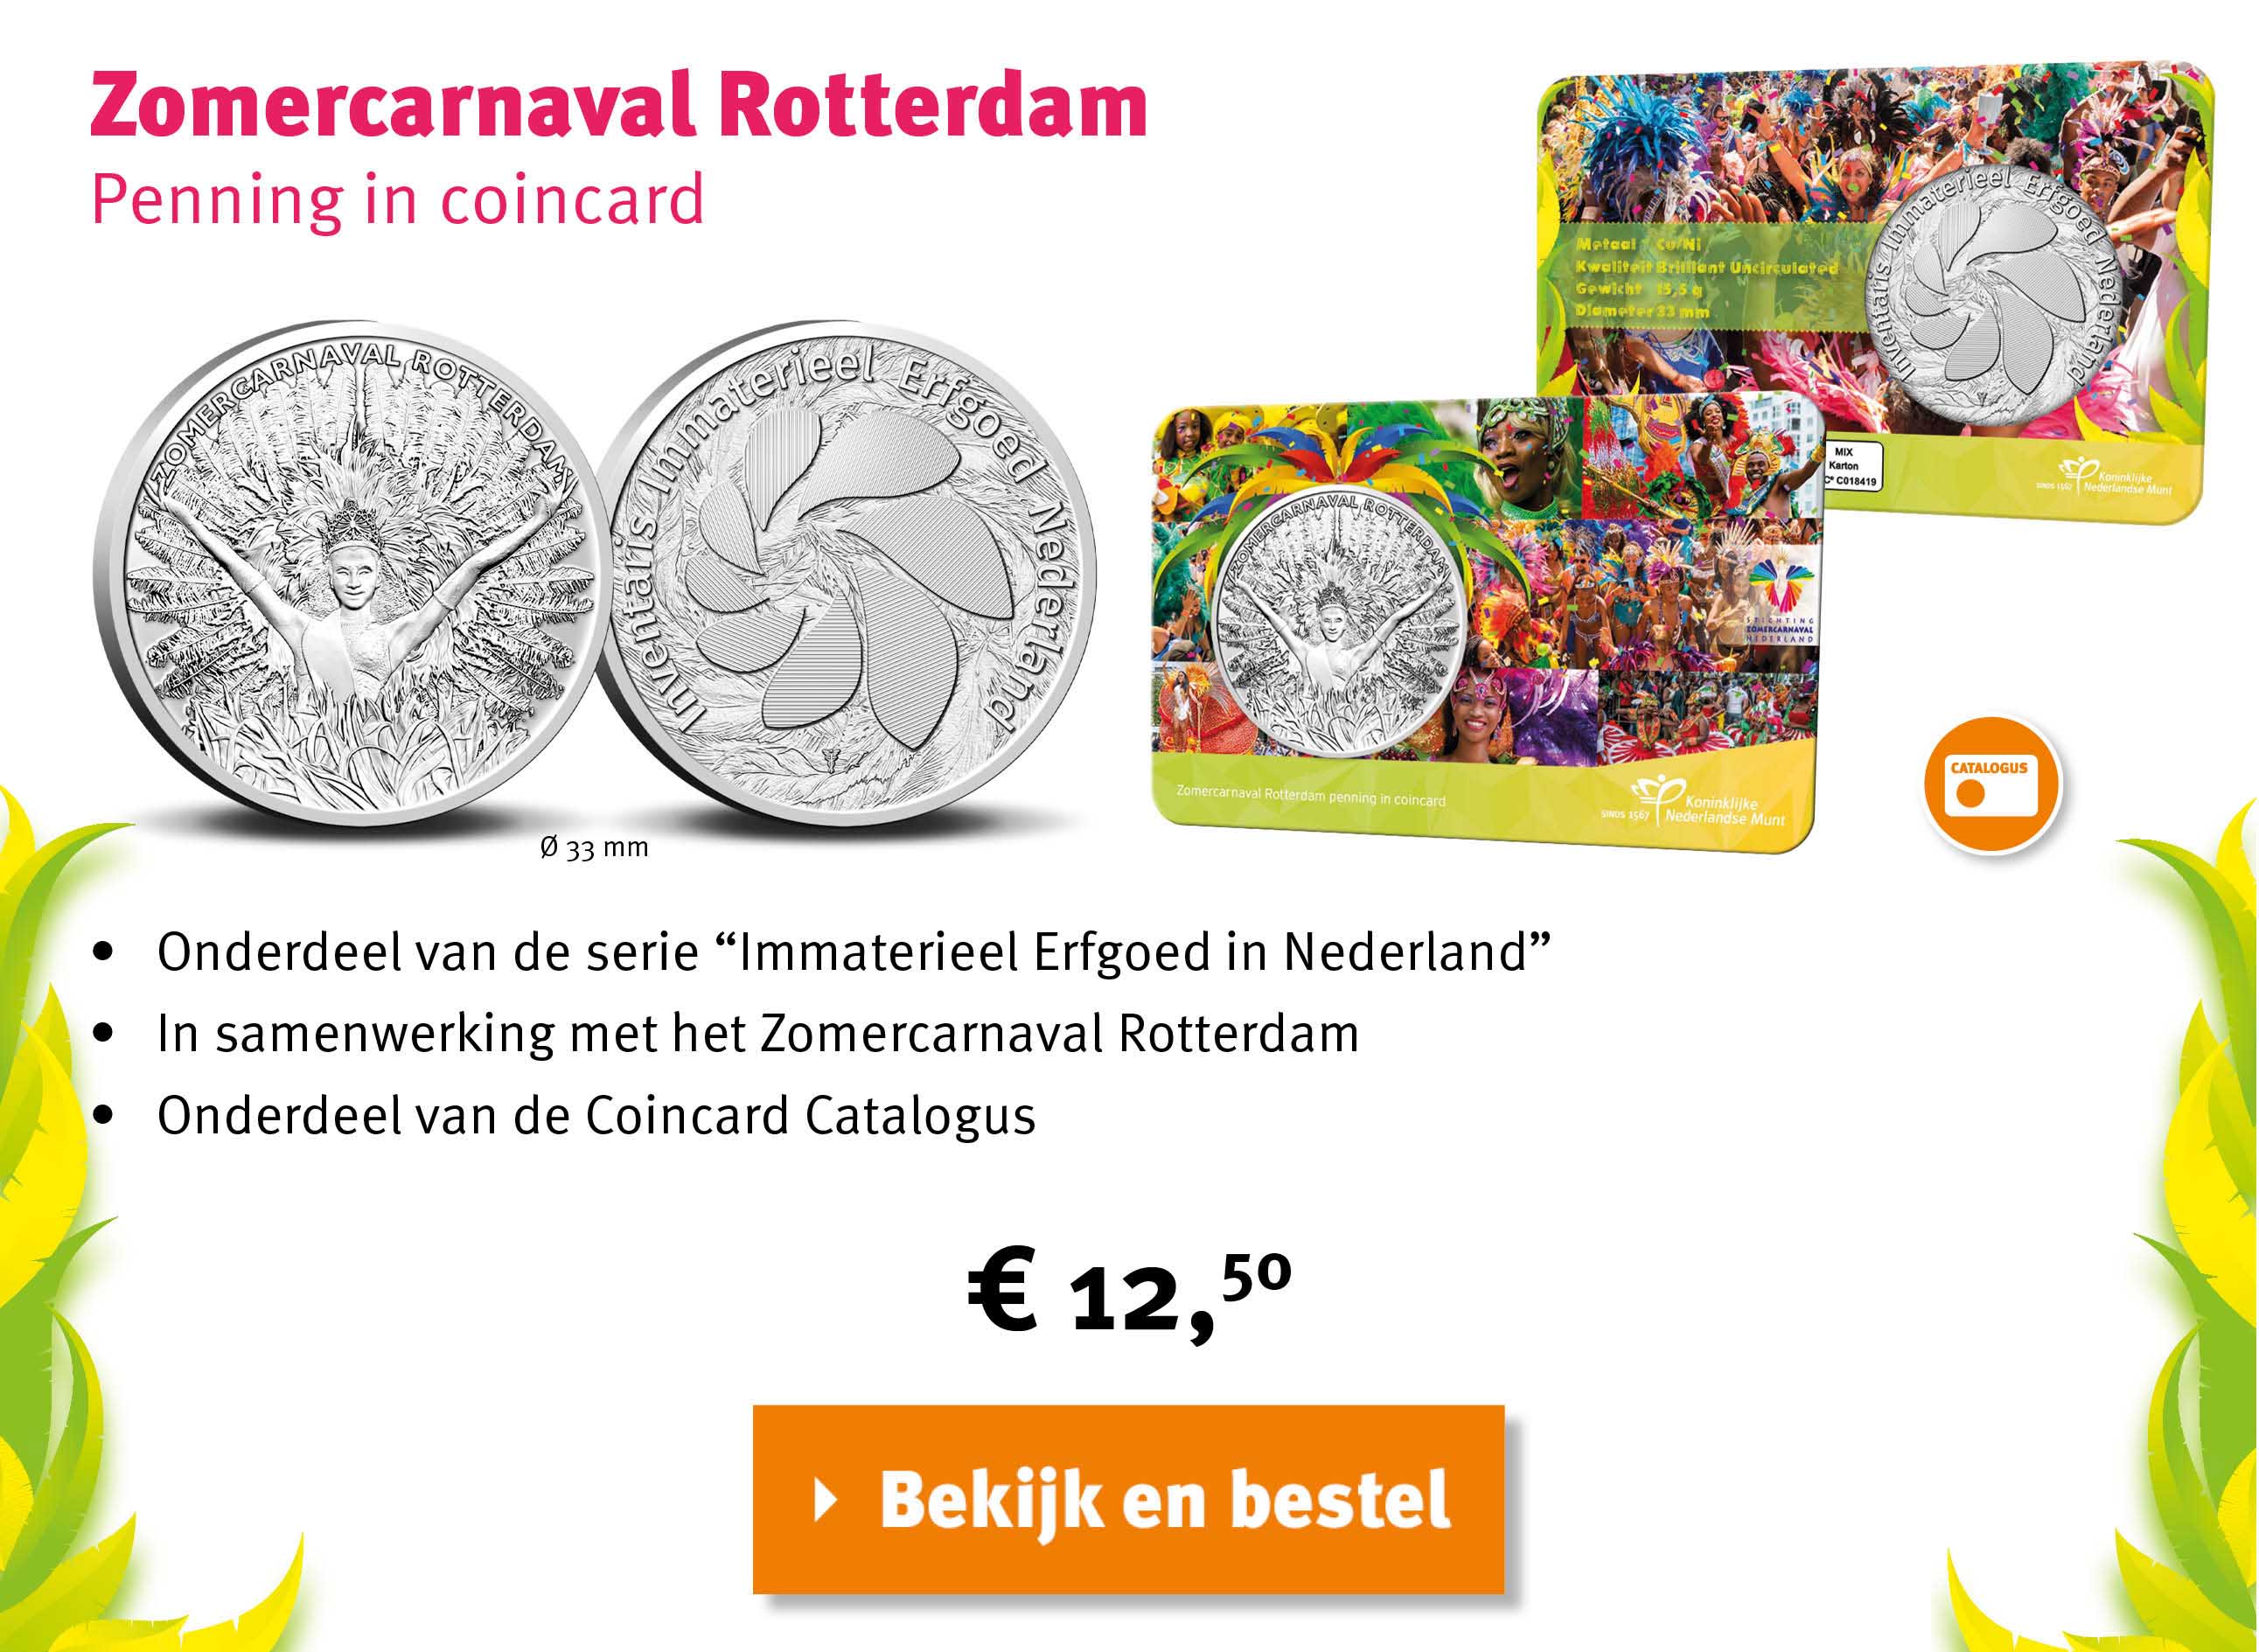 Bekijk en bestel: Zomercarnaval Rotterdam Coincard